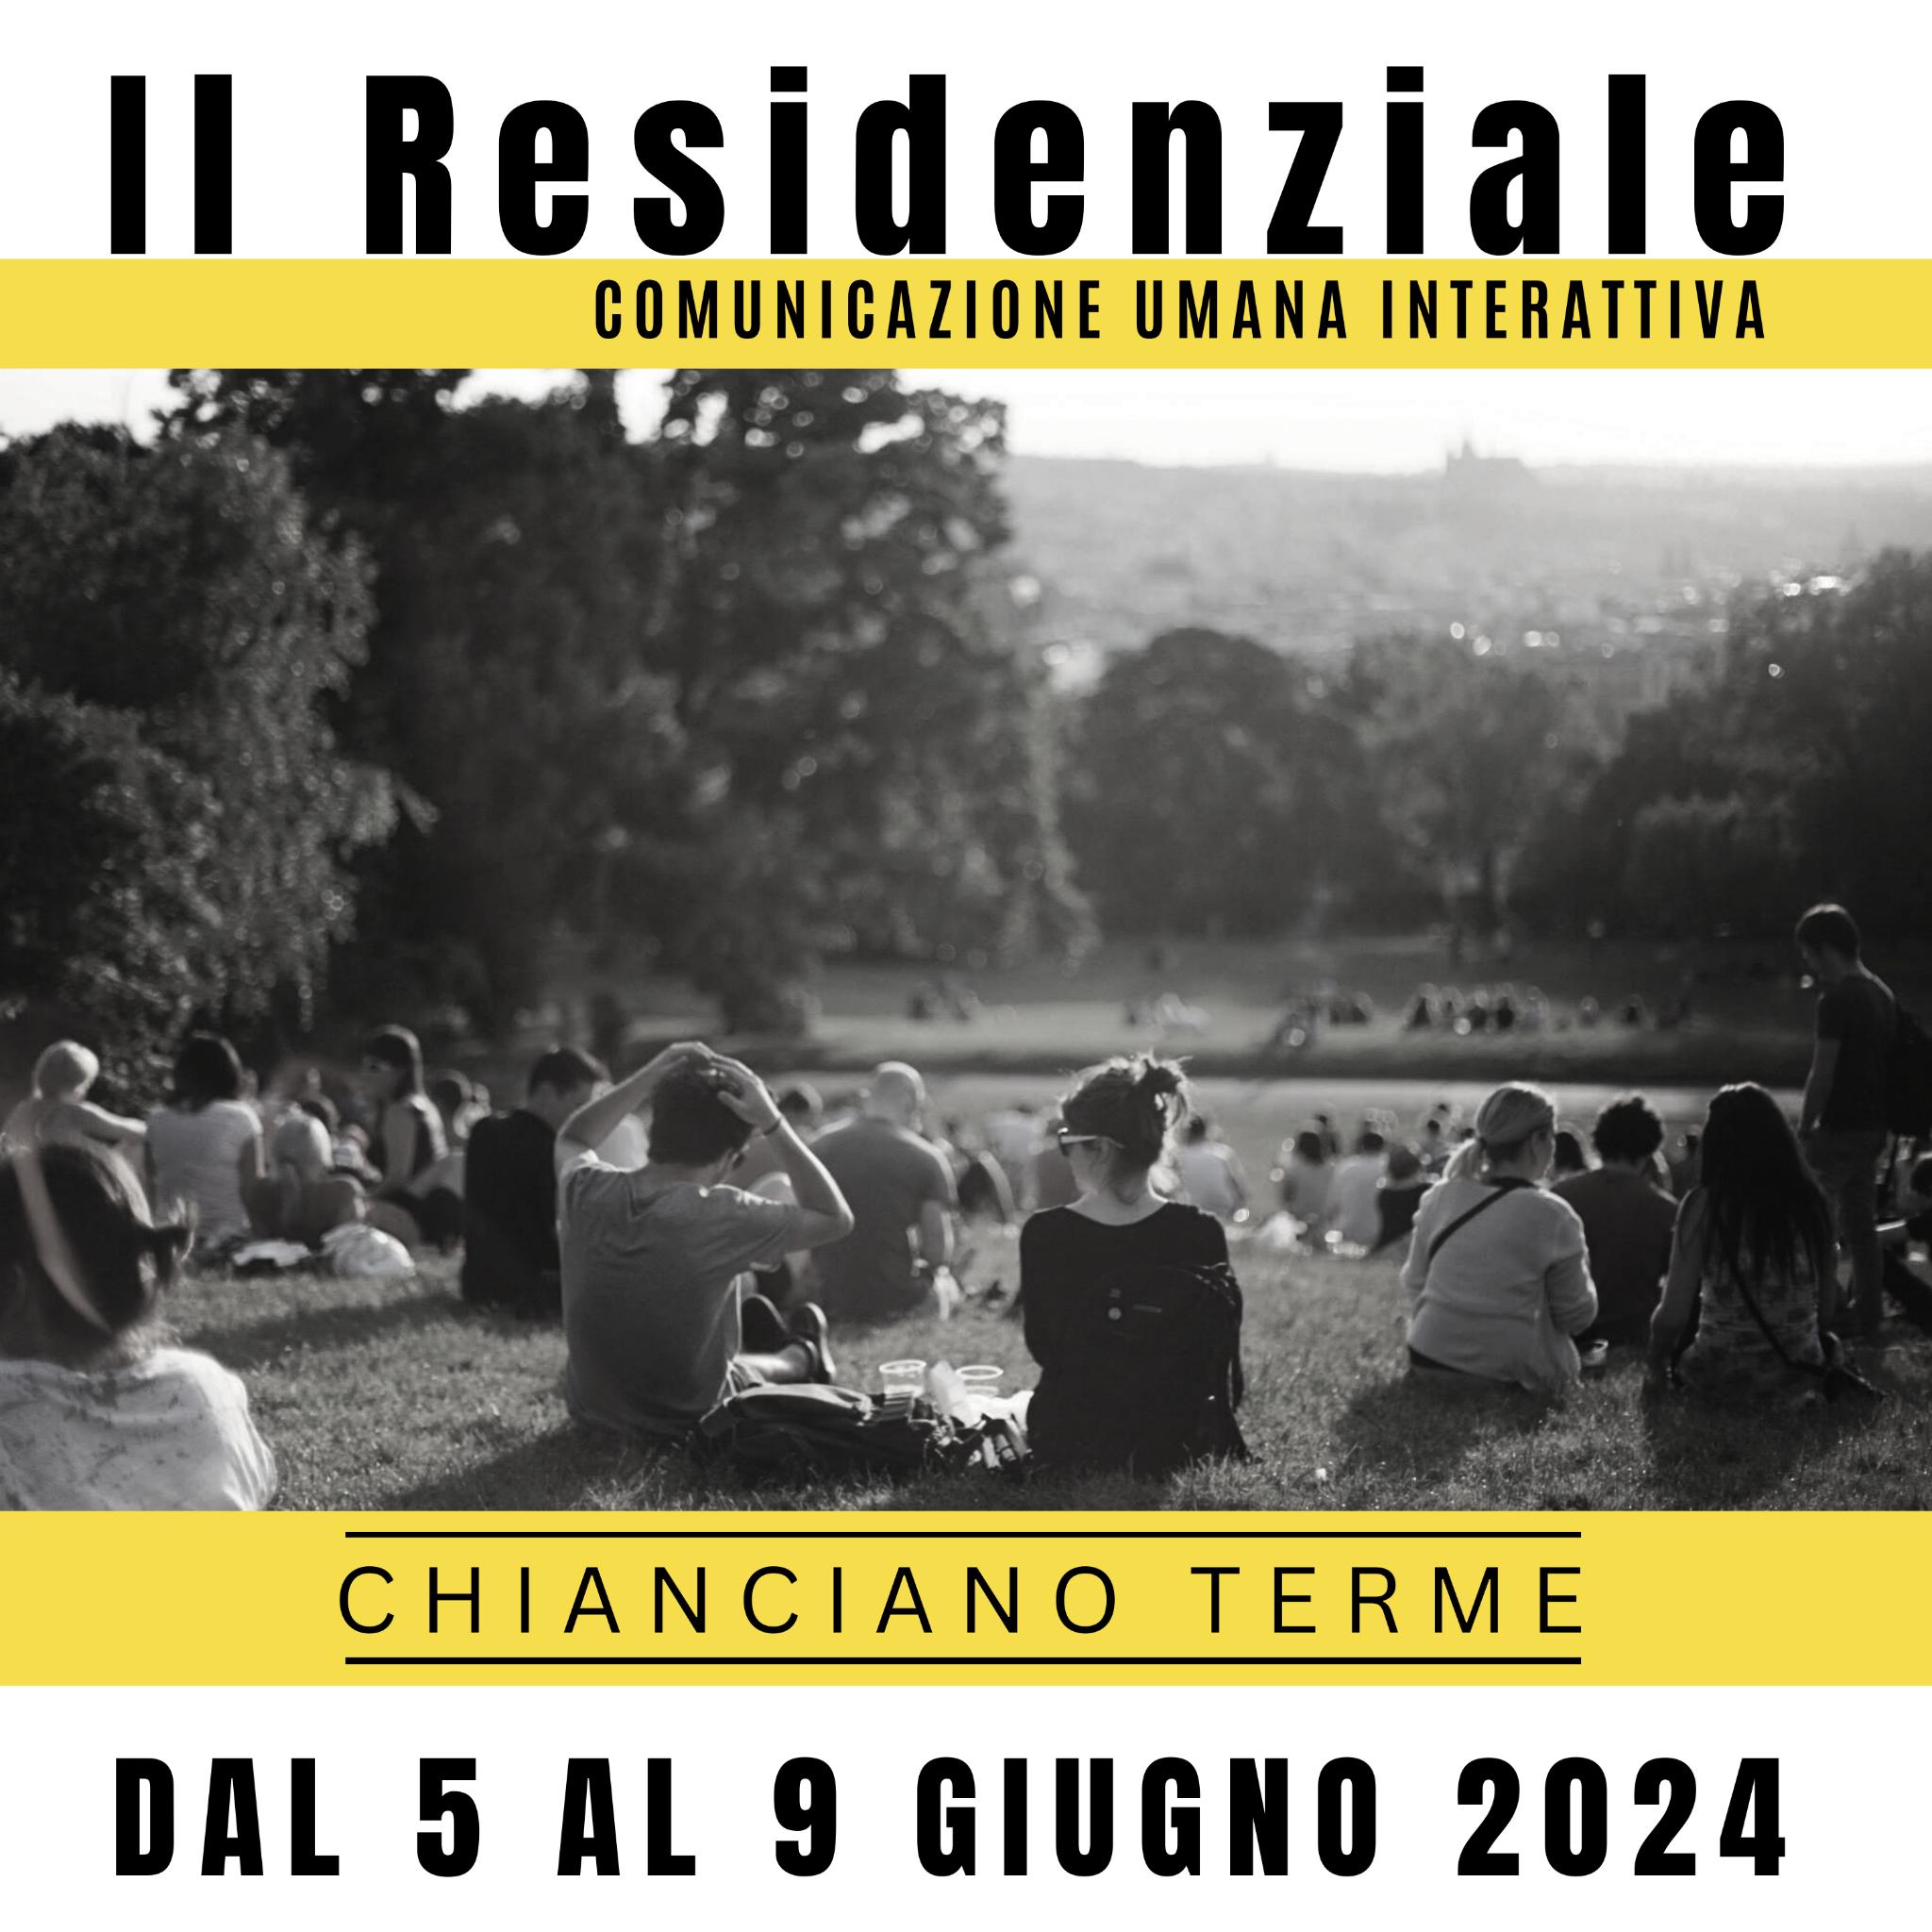 Gruppo di persone sedute su un prato al tramonto durante il Corso Residenziale di Comunicazione Umana Interattiva a Chianciano Terme, con dettagli dell'evento dal 5 al 9 giugno 2024 in sovrimpressione.